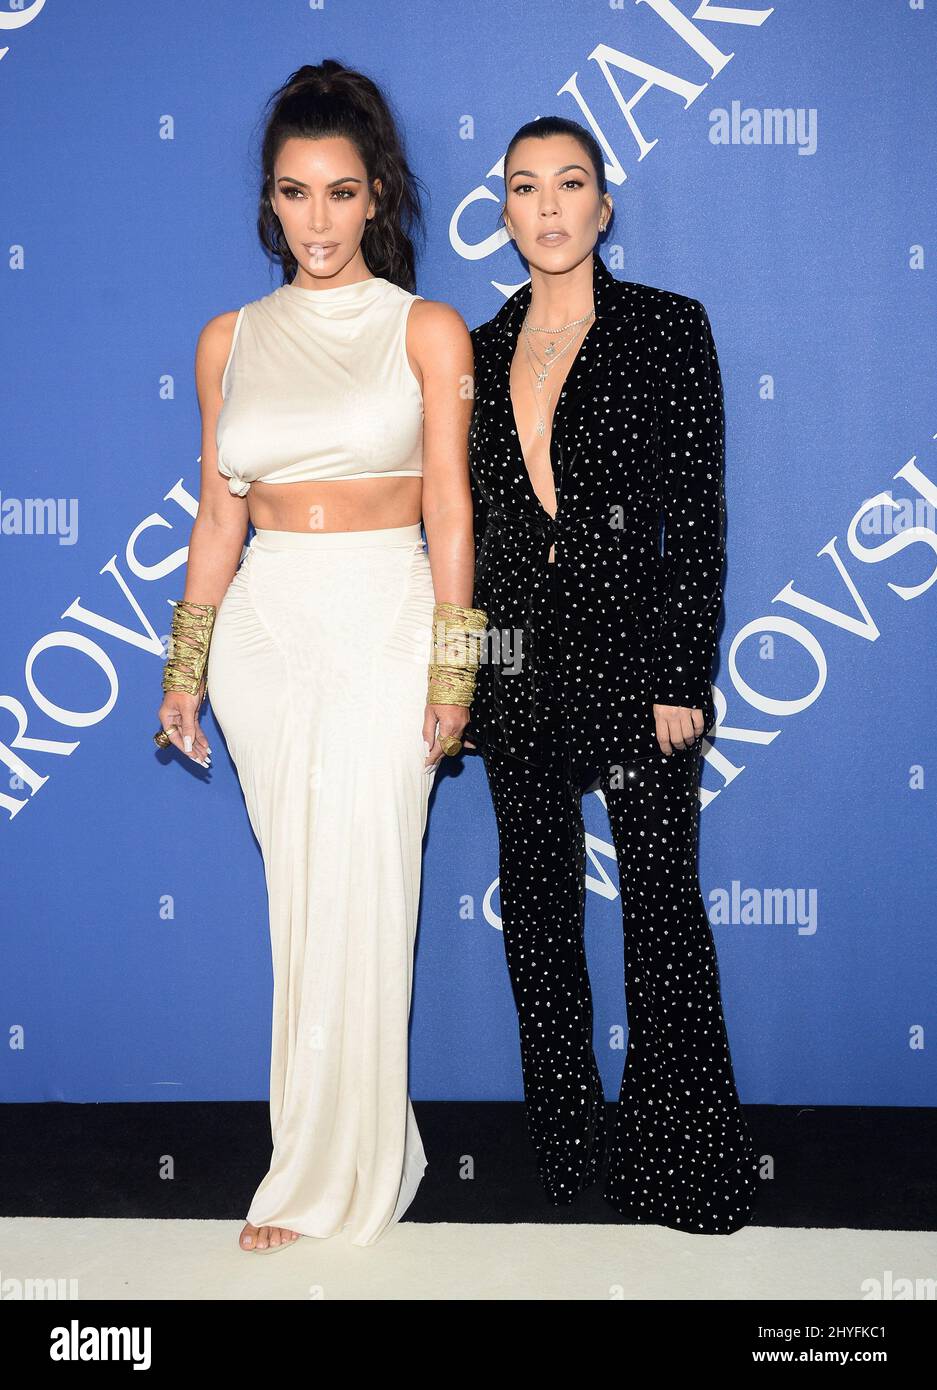 Kim Kardashian et Kourtney Kardashian à l'occasion des Prix de mode 2018 de la CFDA qui se sont tenus au musée de Brooklyn le 4 juin 2018 à Brooklyn, NY Banque D'Images